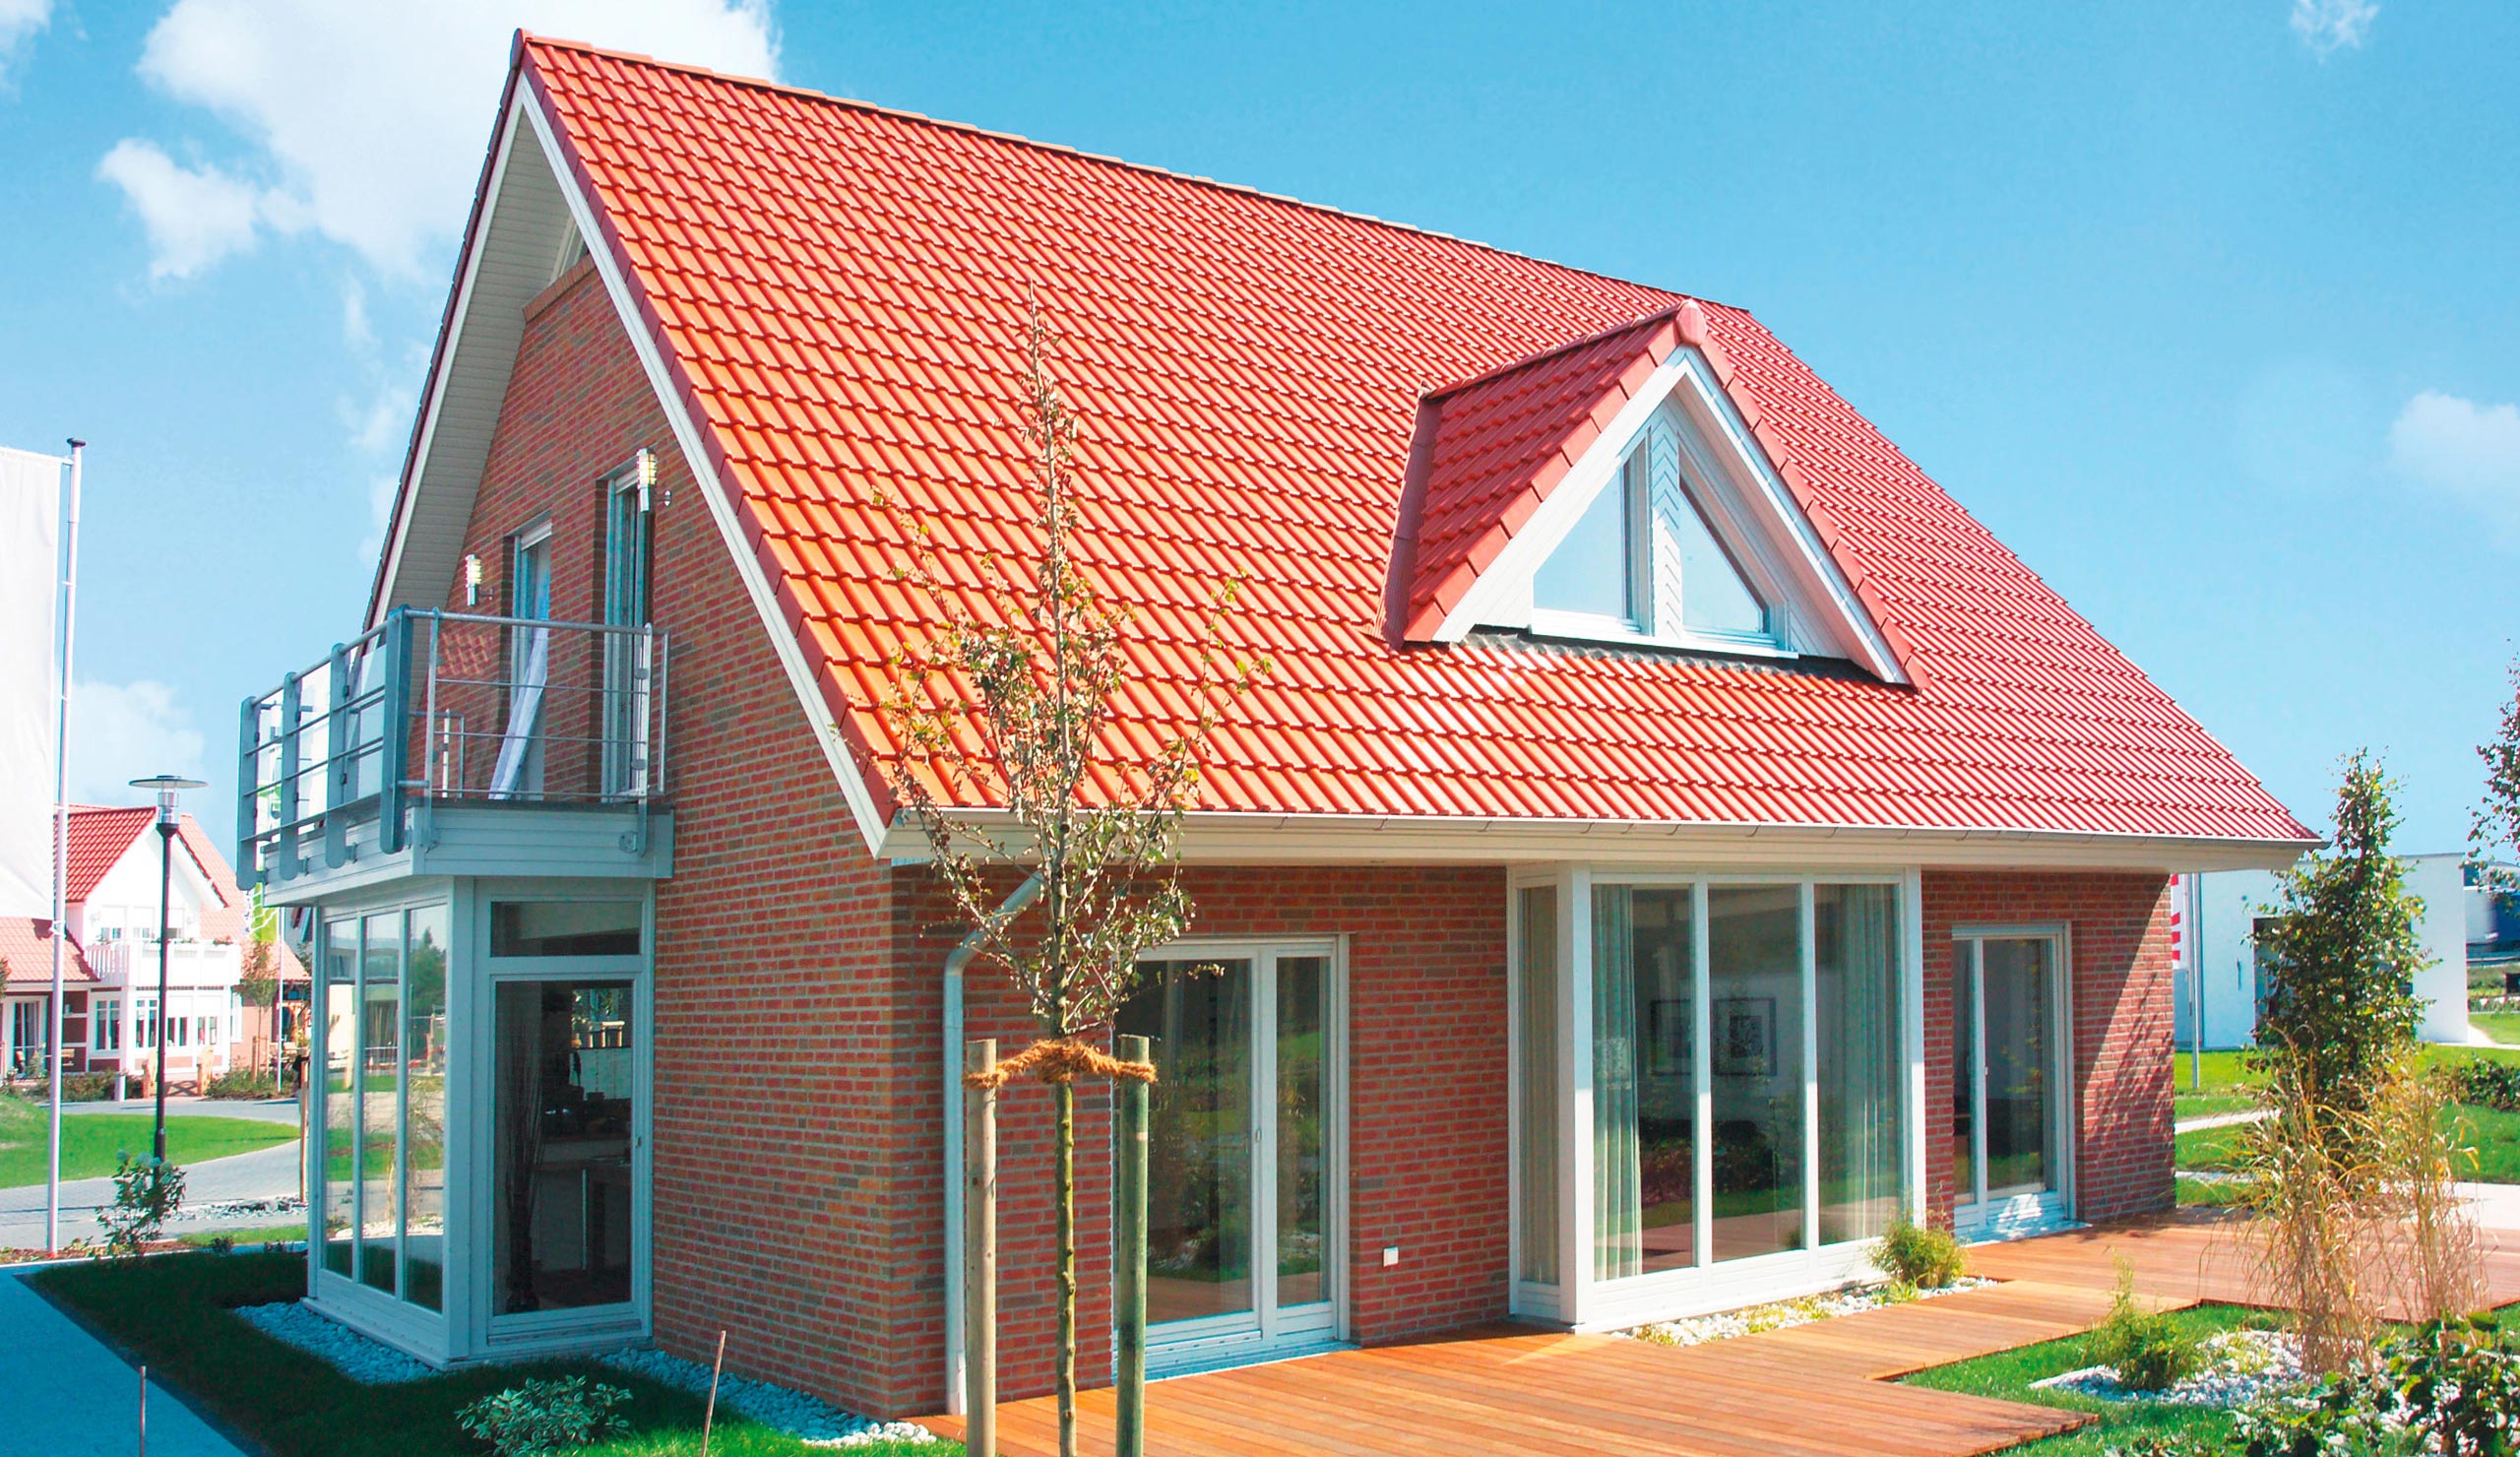 Как устроена стропильная система мансардной крыши: обзор конструкций для малоэтажных домов